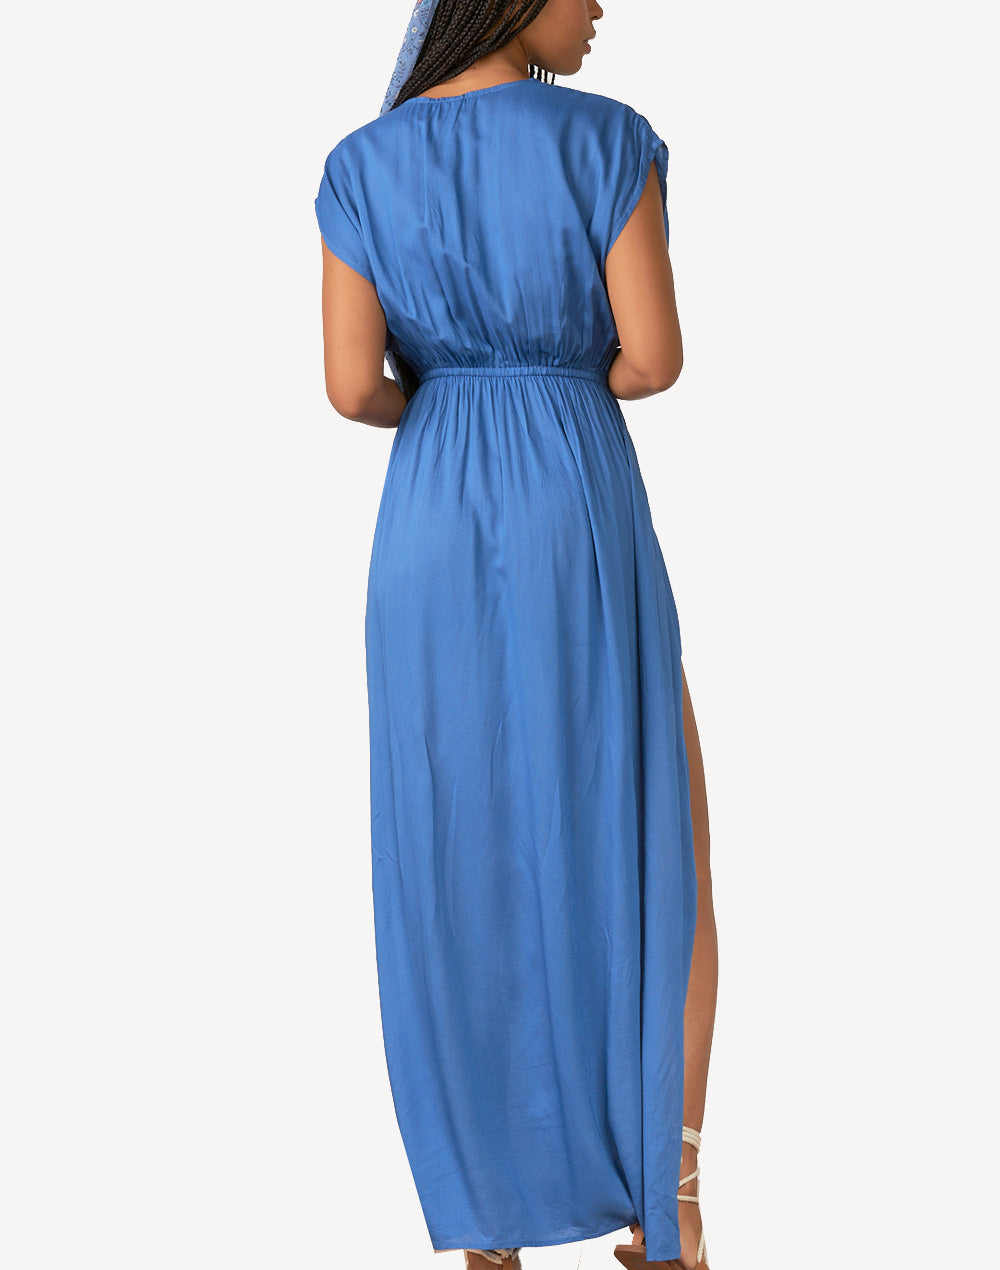 Maxi Deep V Wrap Front Dress#color_blue